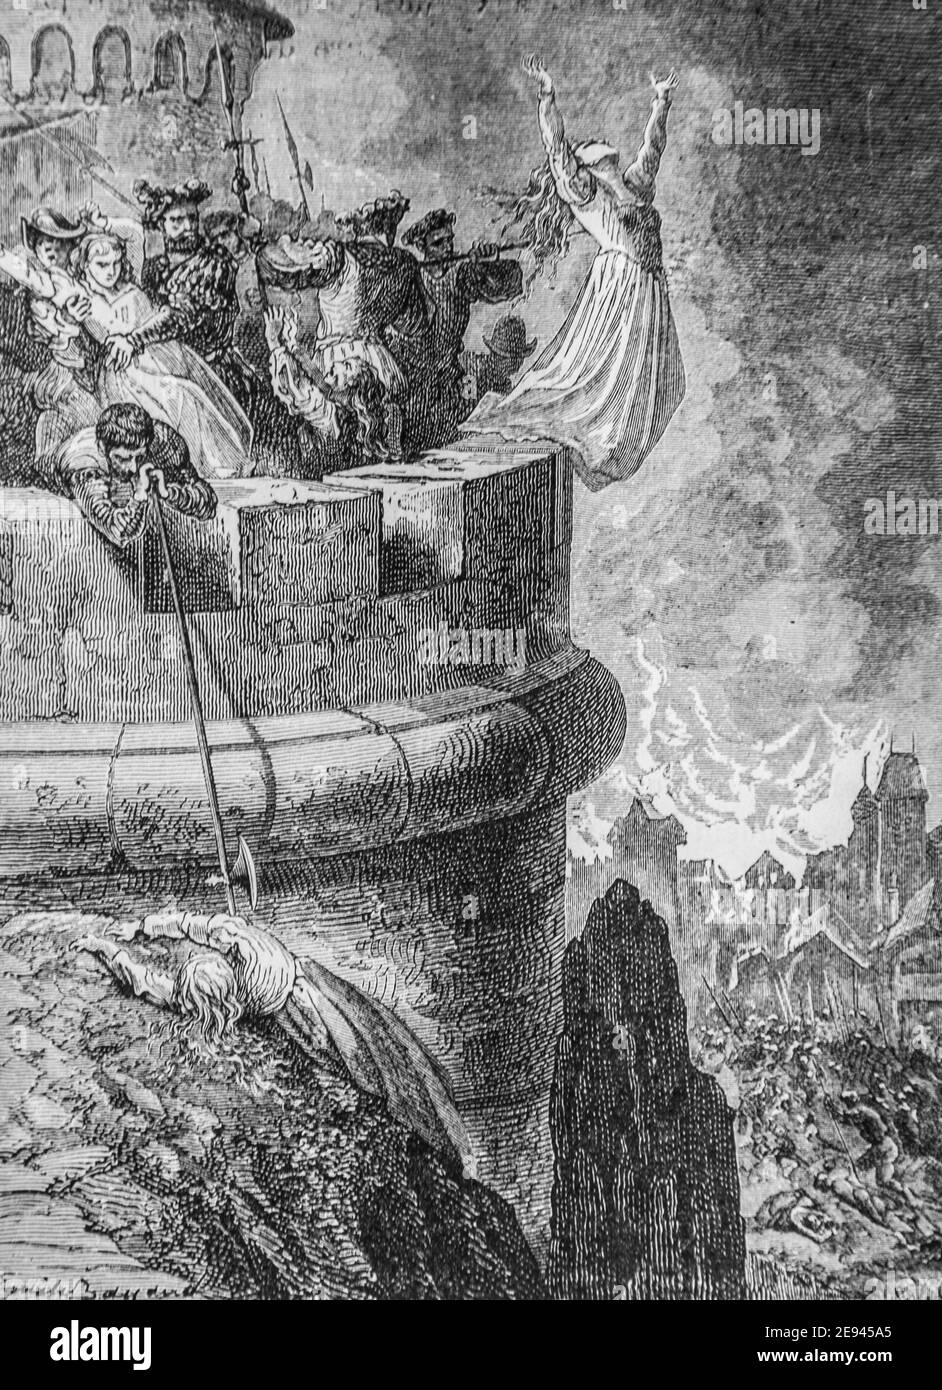 Massacre des Habitants de 1434-1493histoire populaire de france par henri martin,editeur furne 1860 Stockfoto